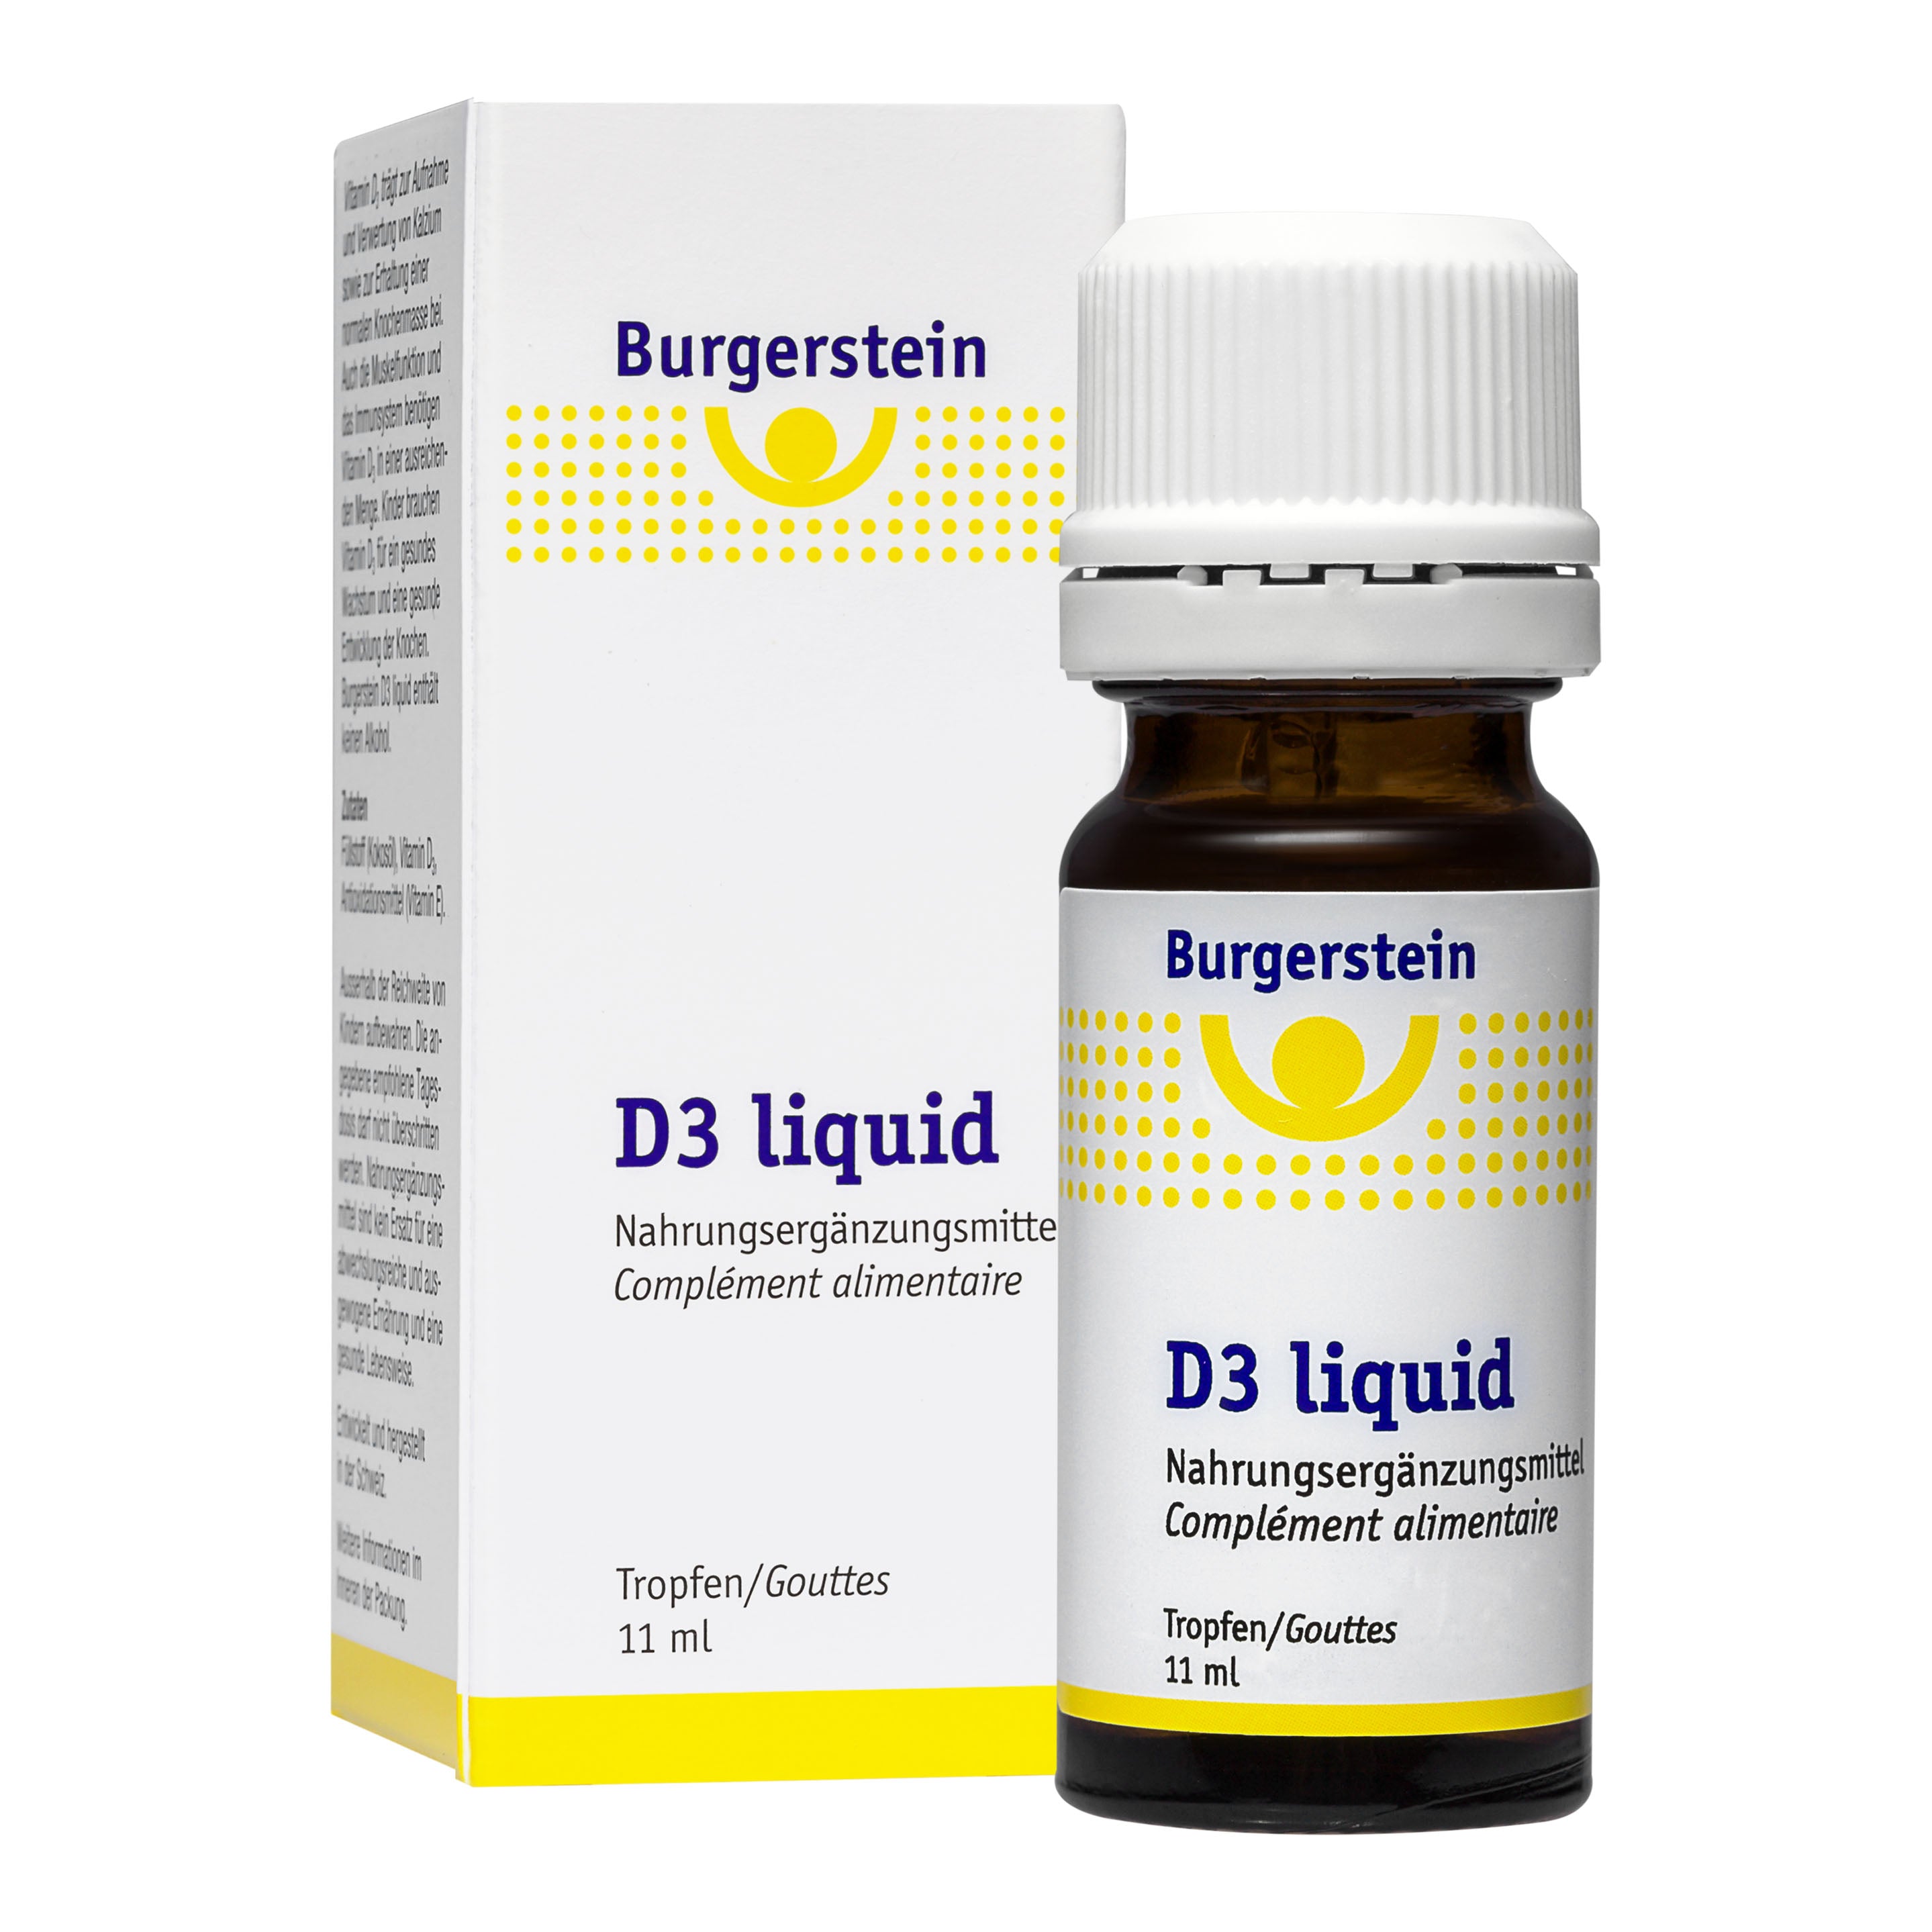 Burgerstein D3 liquid